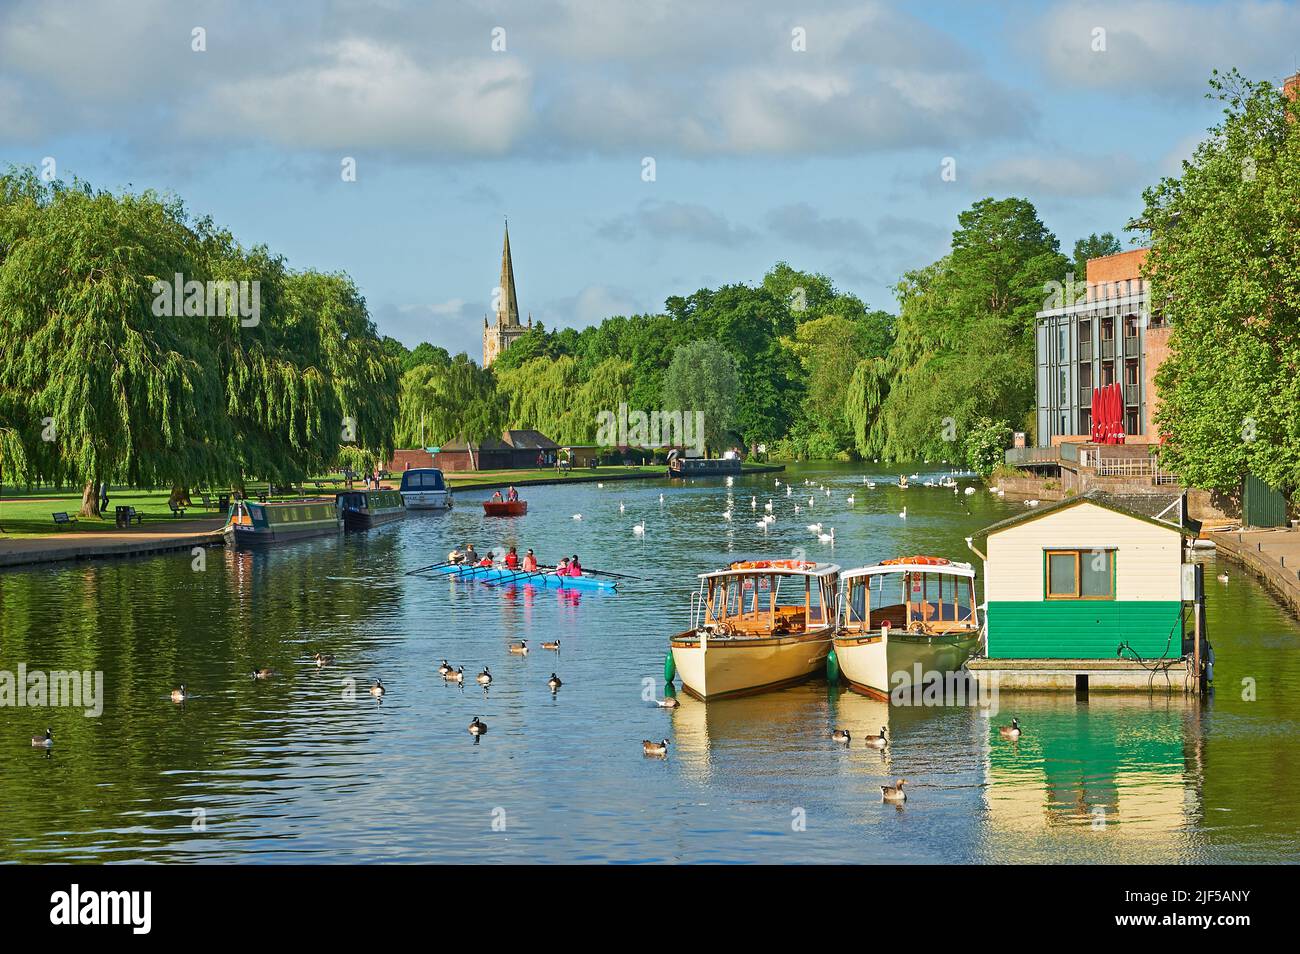 Vue le long de la rivière Avon, Stratford-upon-Avon, Warwickshire vers l'église de la Sainte-Trinité, avec des bateaux d'excursion d'une journée de tourisme amarrés. Banque D'Images